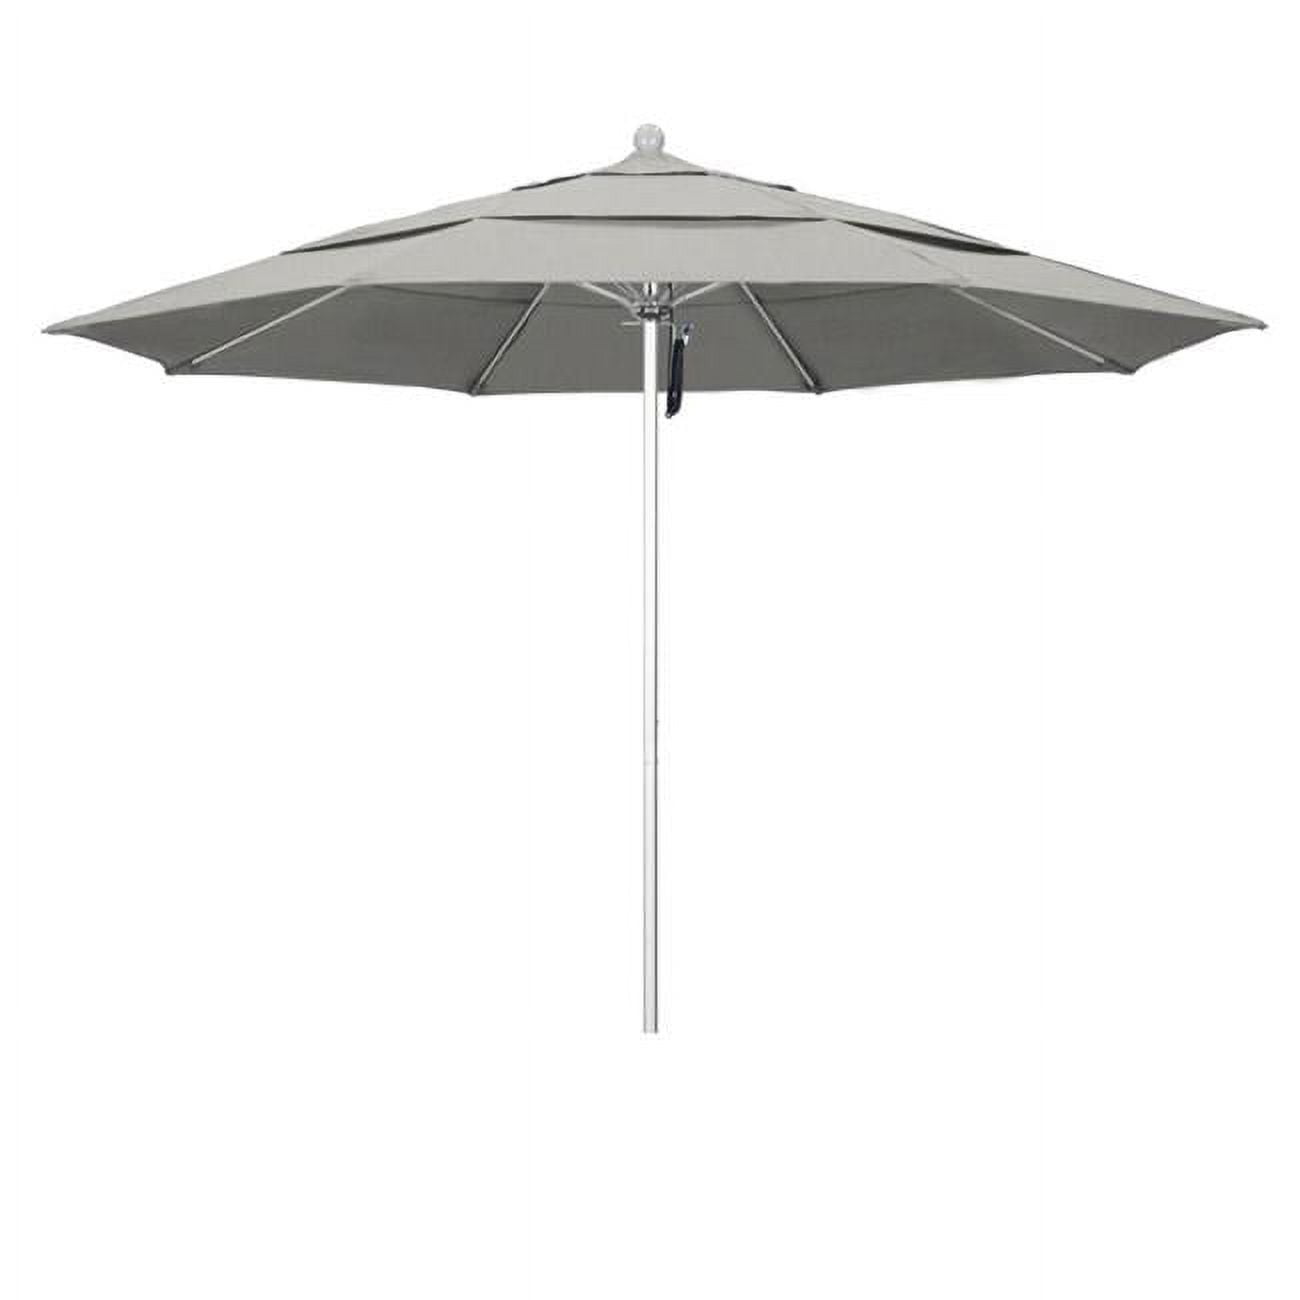 Alto118002-5402-dwv Venture Silver Market Umbrella, Granite - 11 Ft. X 8 Ribs